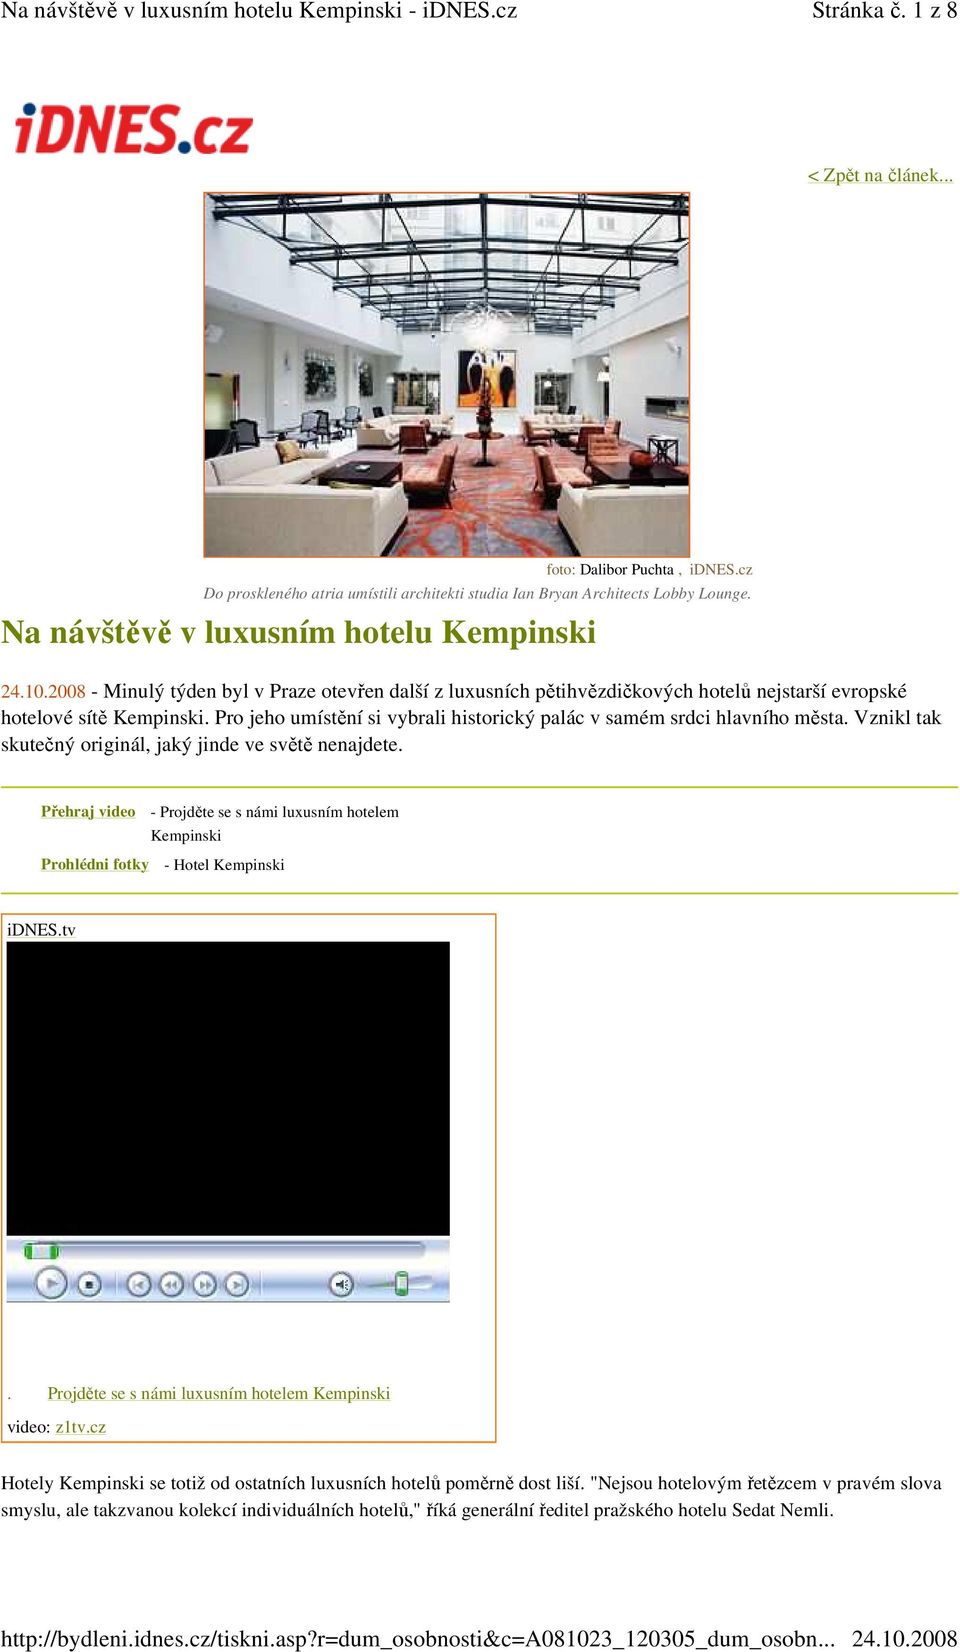 Vznikl tak skutečný originál, jaký jinde ve světě nenajdete. Přehraj video Prohlédni fotky - Projděte se s námi luxusním hotelem Kempinski - Hotel Kempinski idnes.tv.